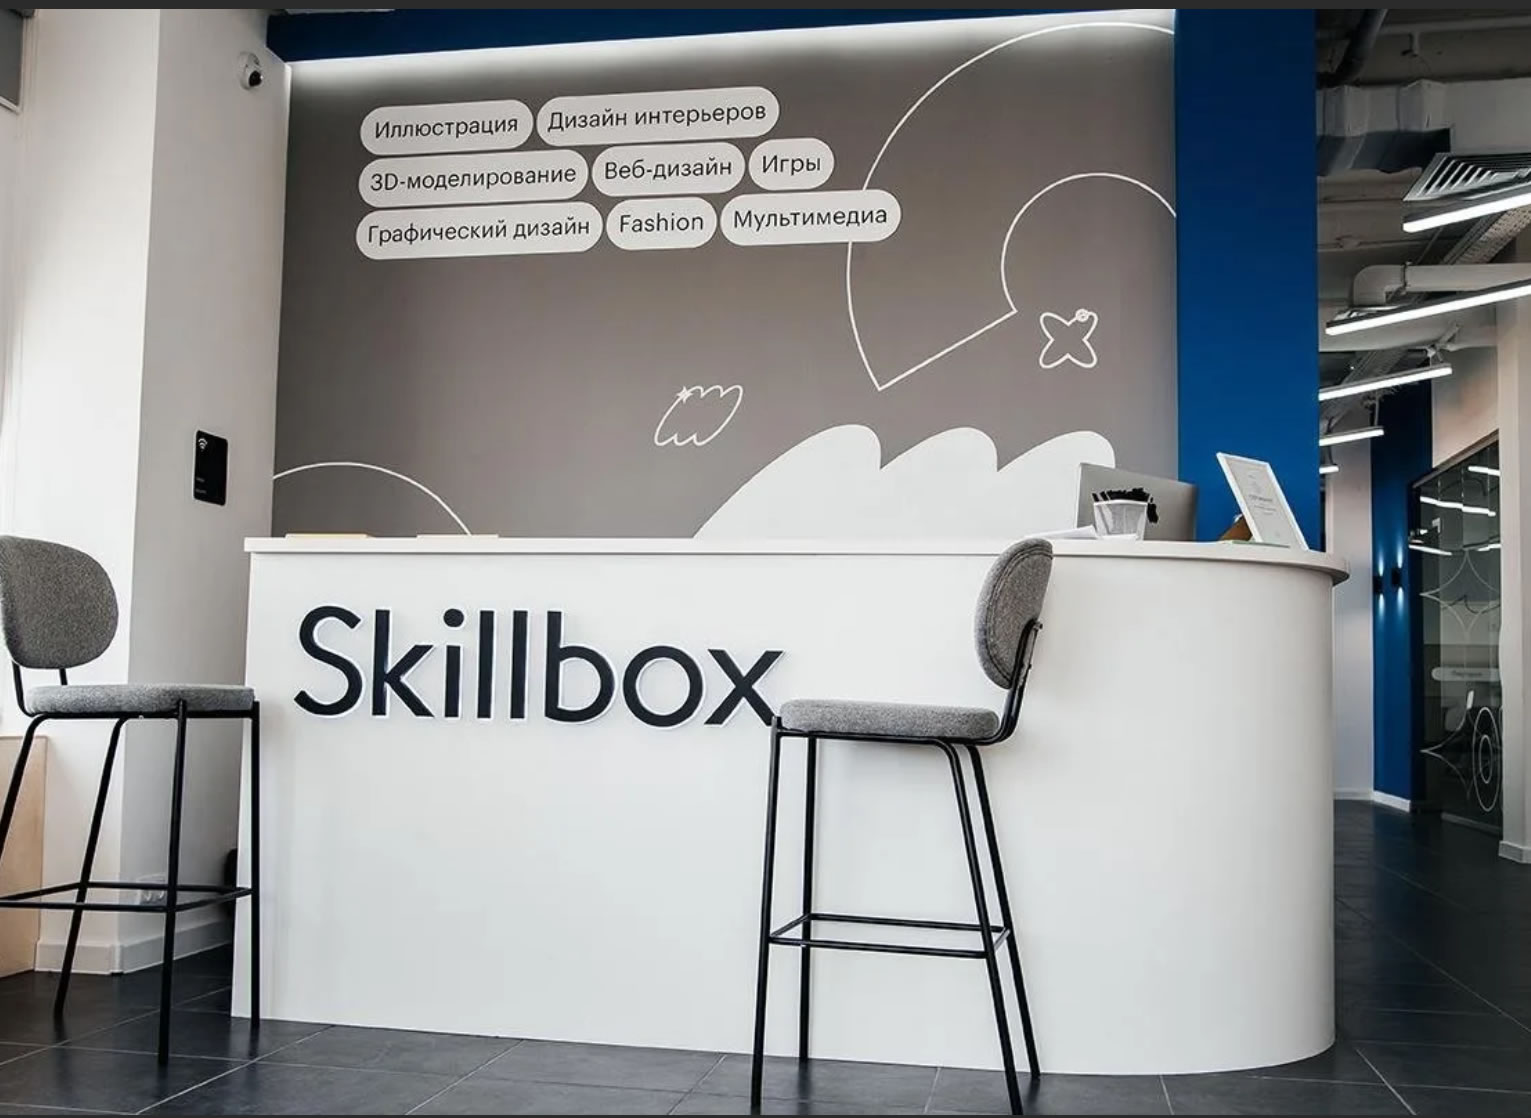 Очное образование и практика в Skillbox